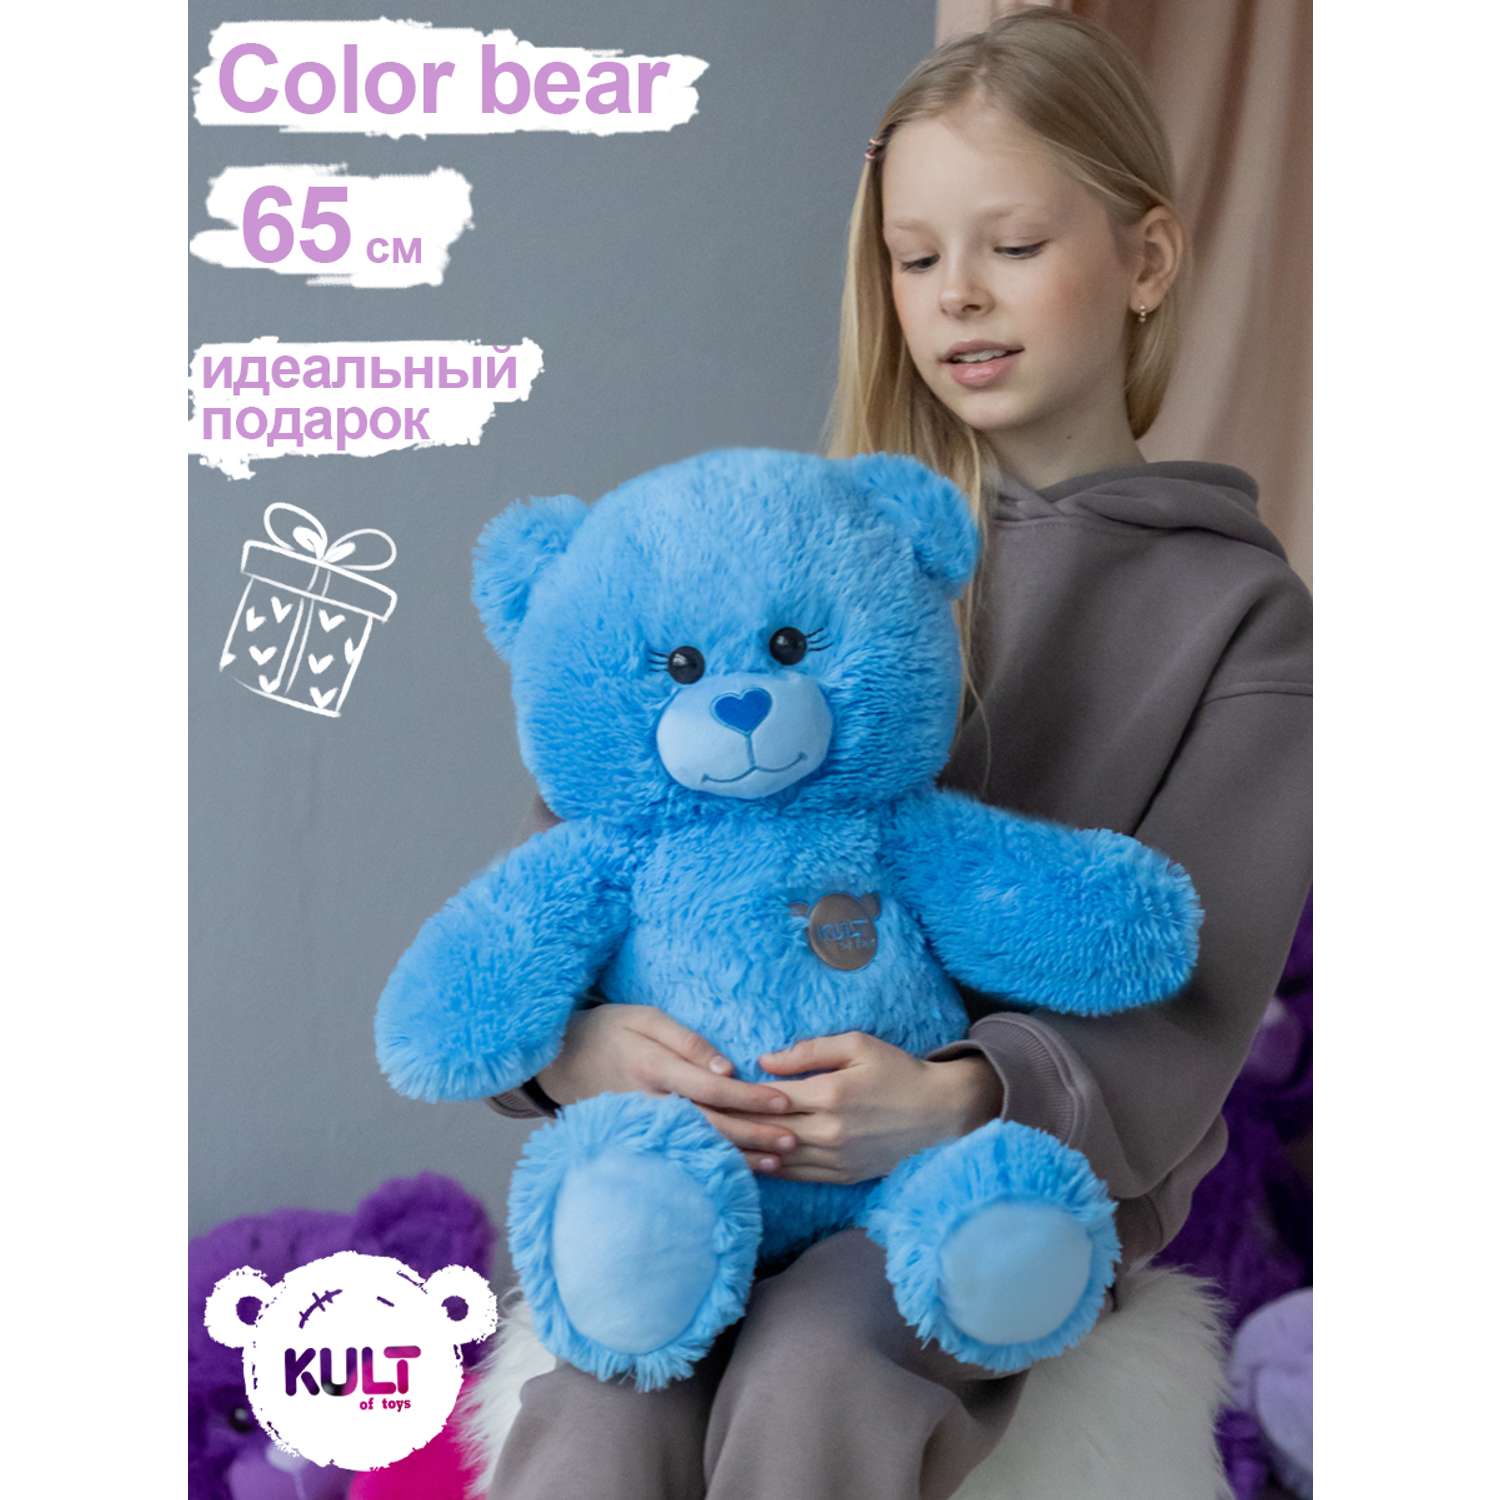 Мягкая игрушка KULT of toys Плюшевый медведь Color цвет синий 65см - фото 2